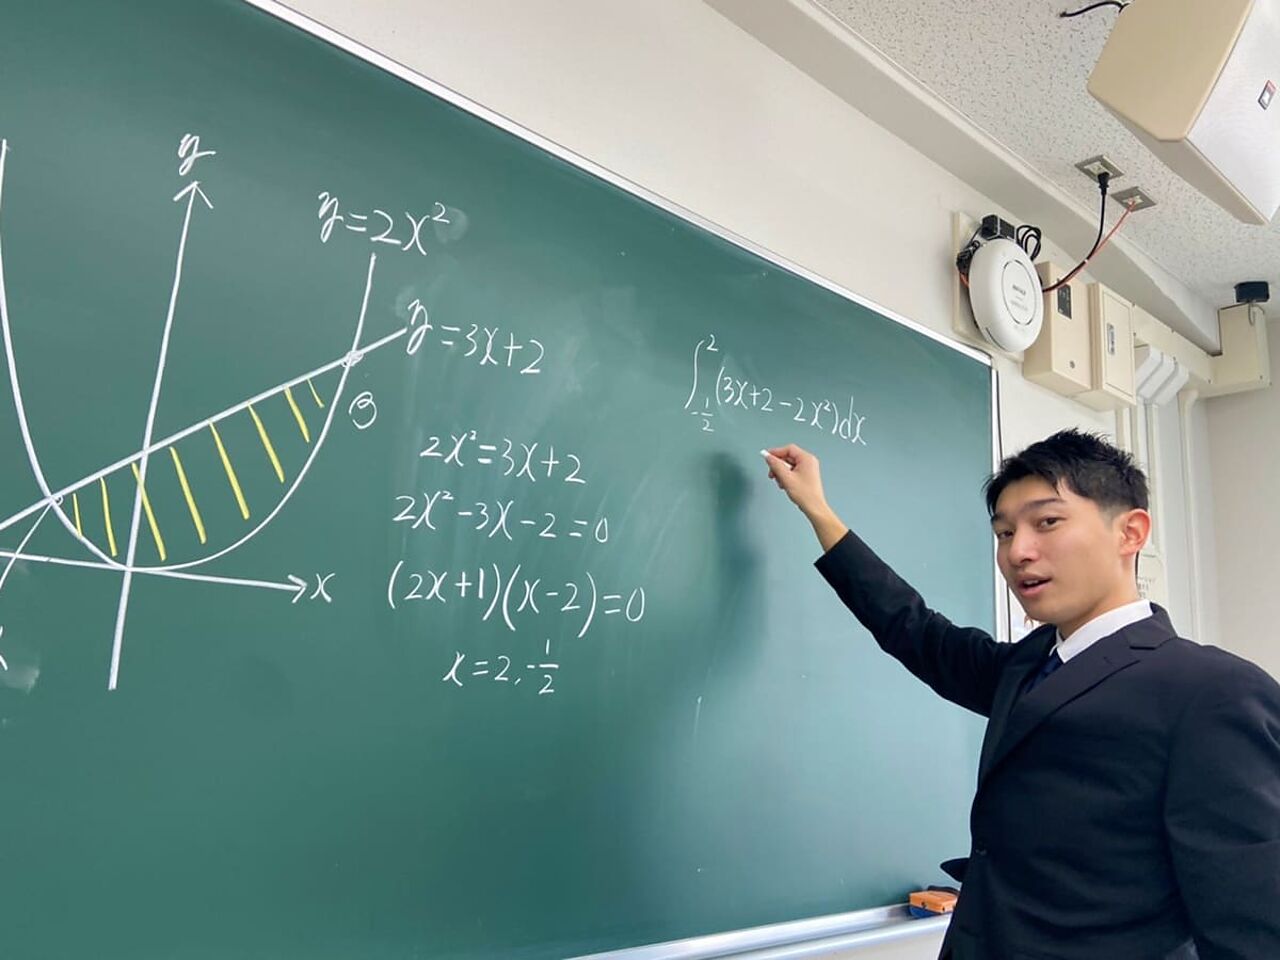 塾長の渡辺さんが黒板に文字を書いている画像